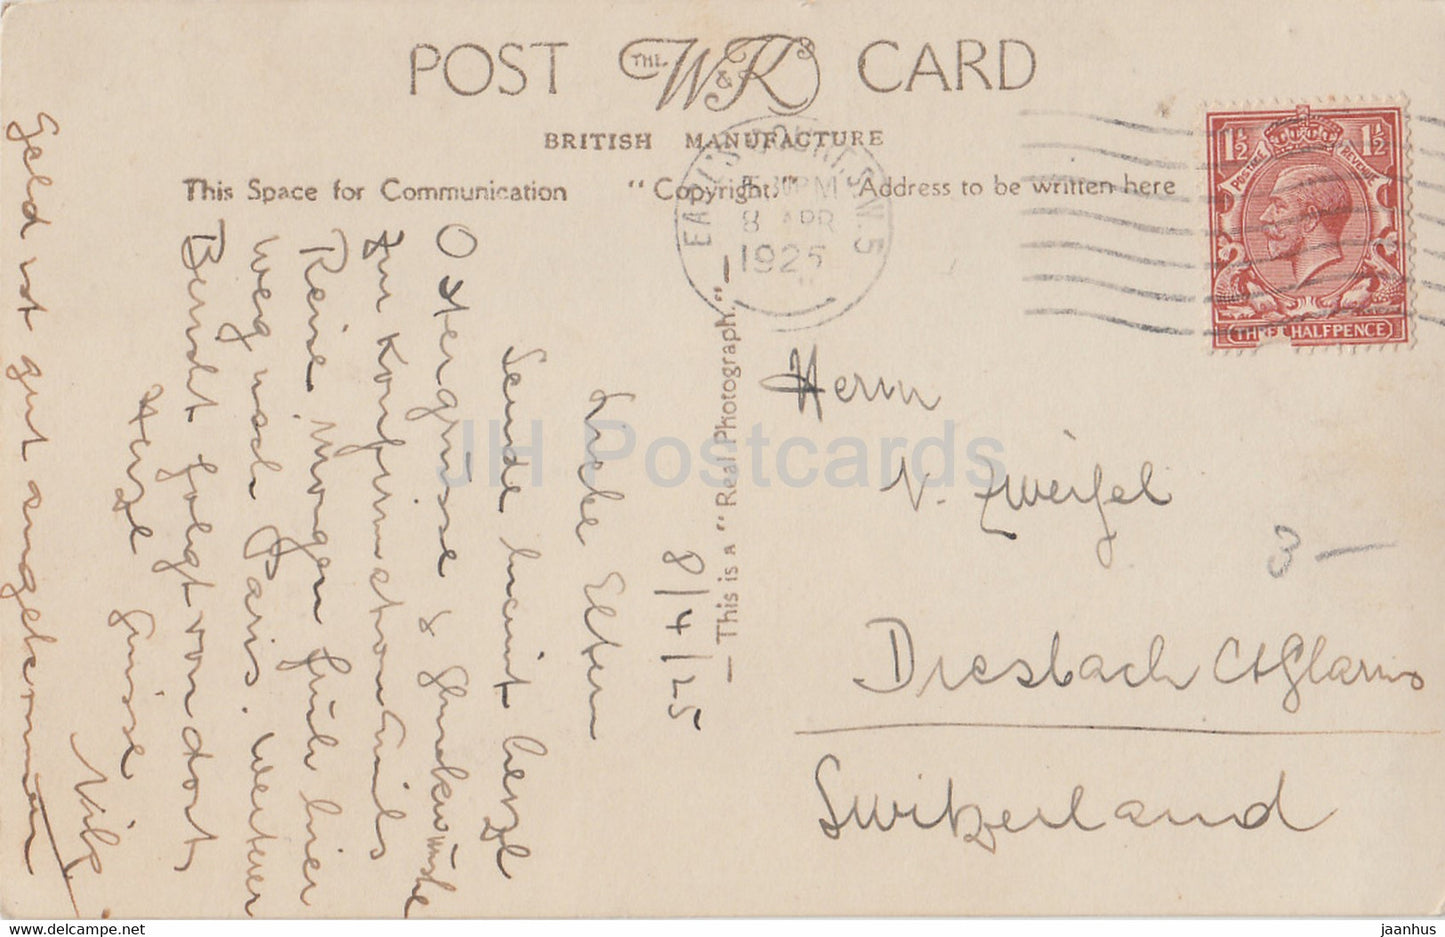 London - St Paul's Cathedral - W &amp; K London - 139 - alte Postkarte - 1925 - England - Vereinigtes Königreich - gebraucht